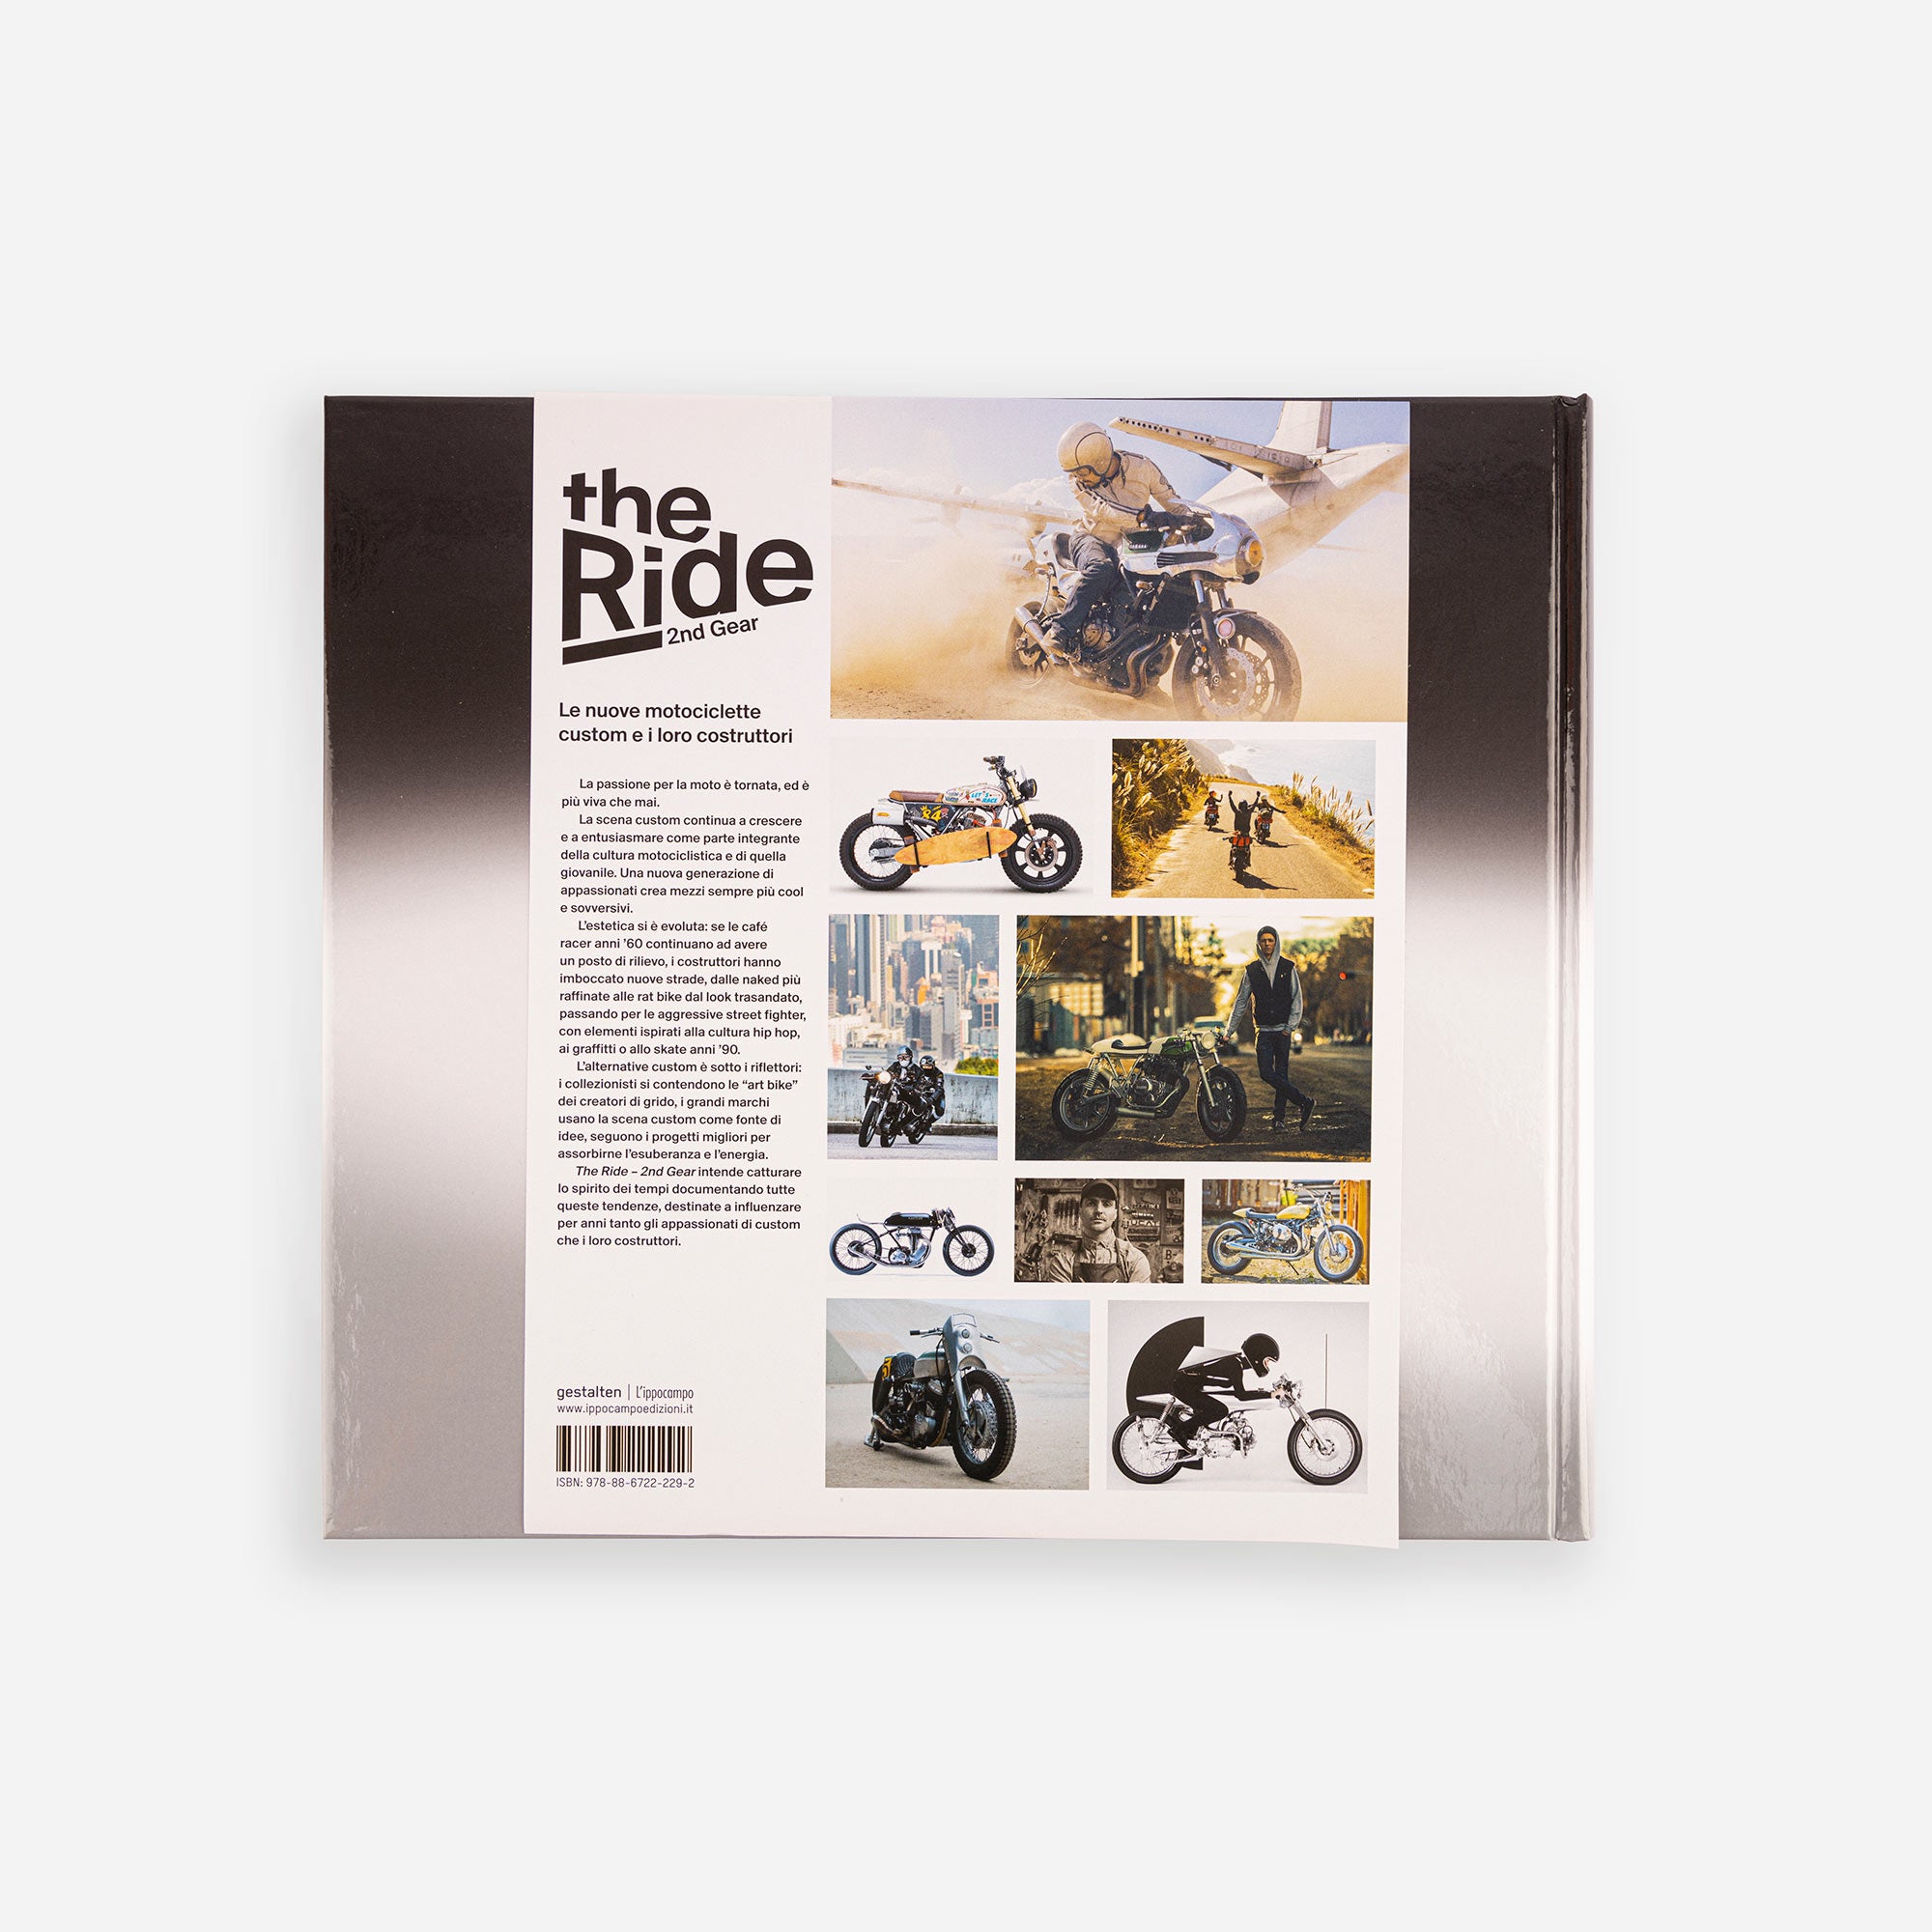 The Ride 2nd Gear - Le nuove motociclette custom e i loro costruttori